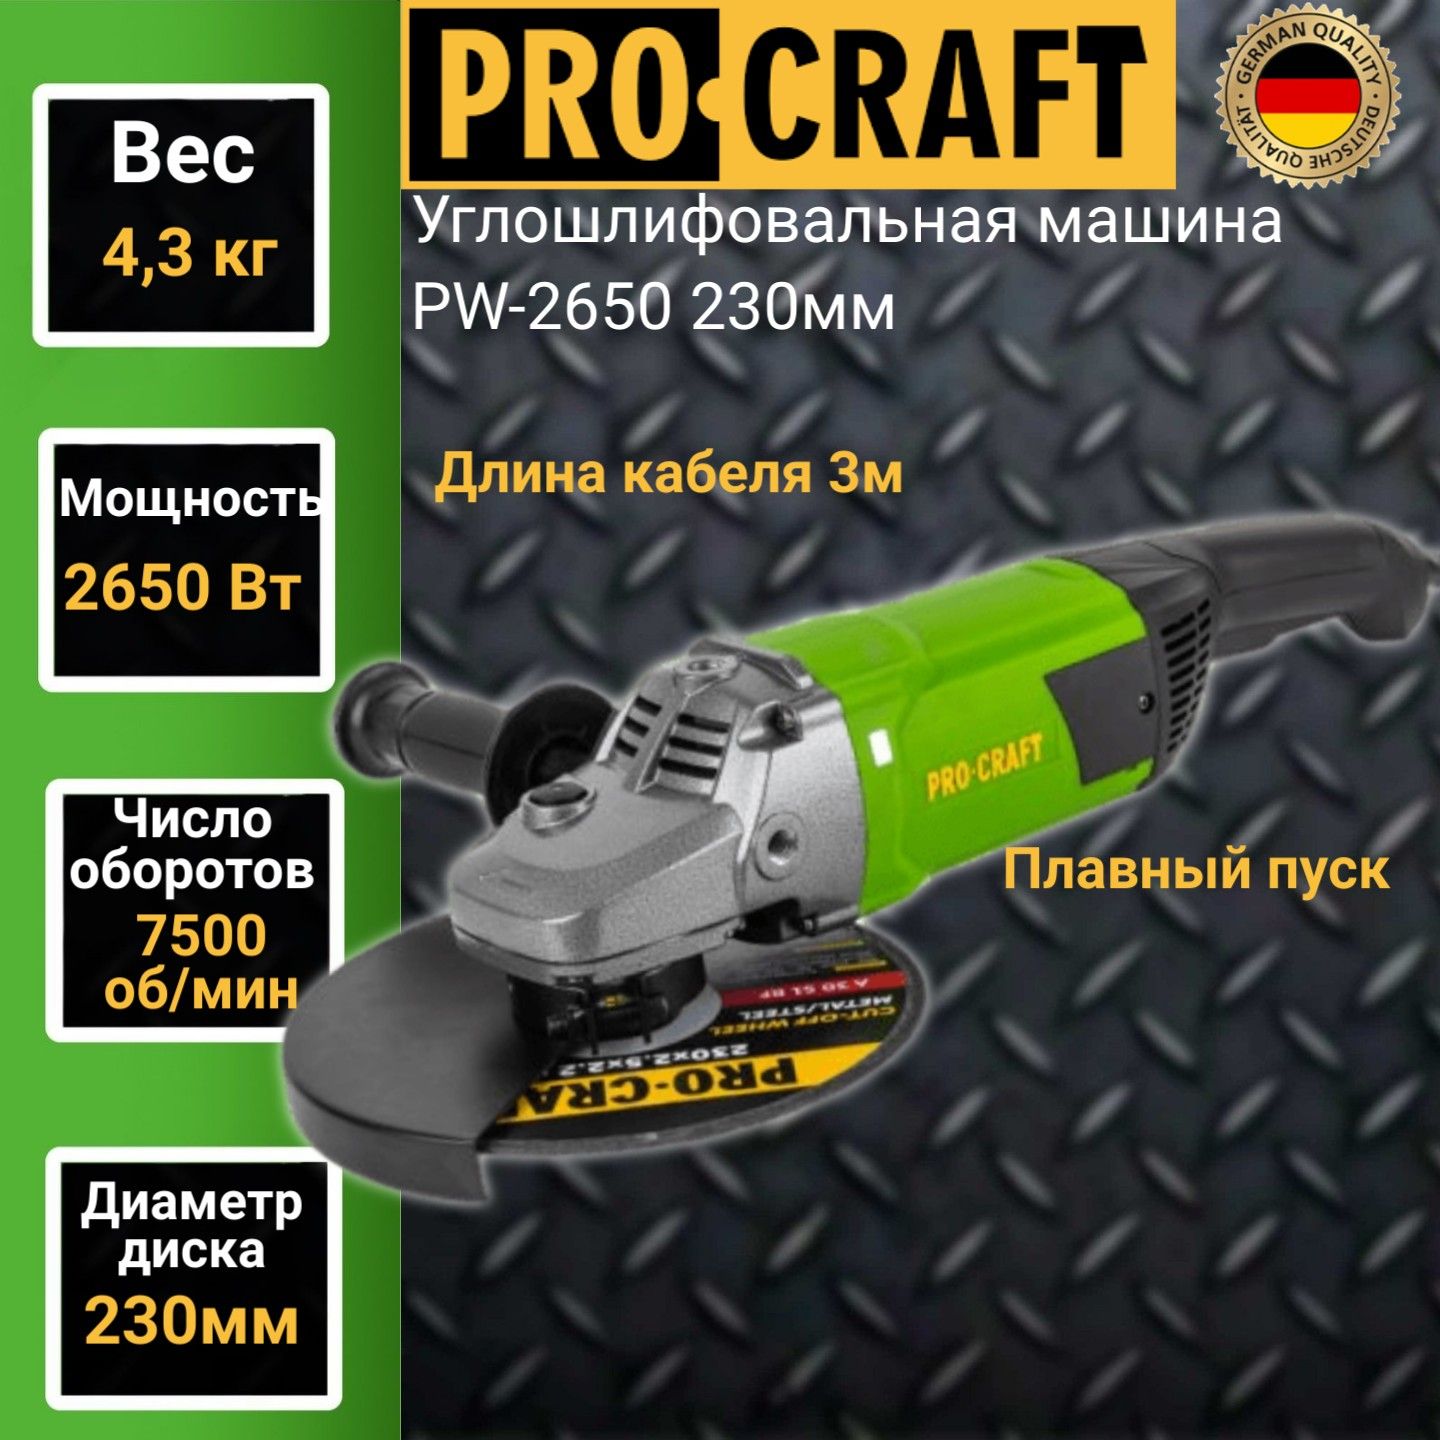 Углошлифовальная машина болгарка Procraft PW 2650, 230мм круг, 2650Вт, 7500об/мин углошлифовальная машина болгарка procraft pw 1200 125мм круг 1200вт 11000об мин